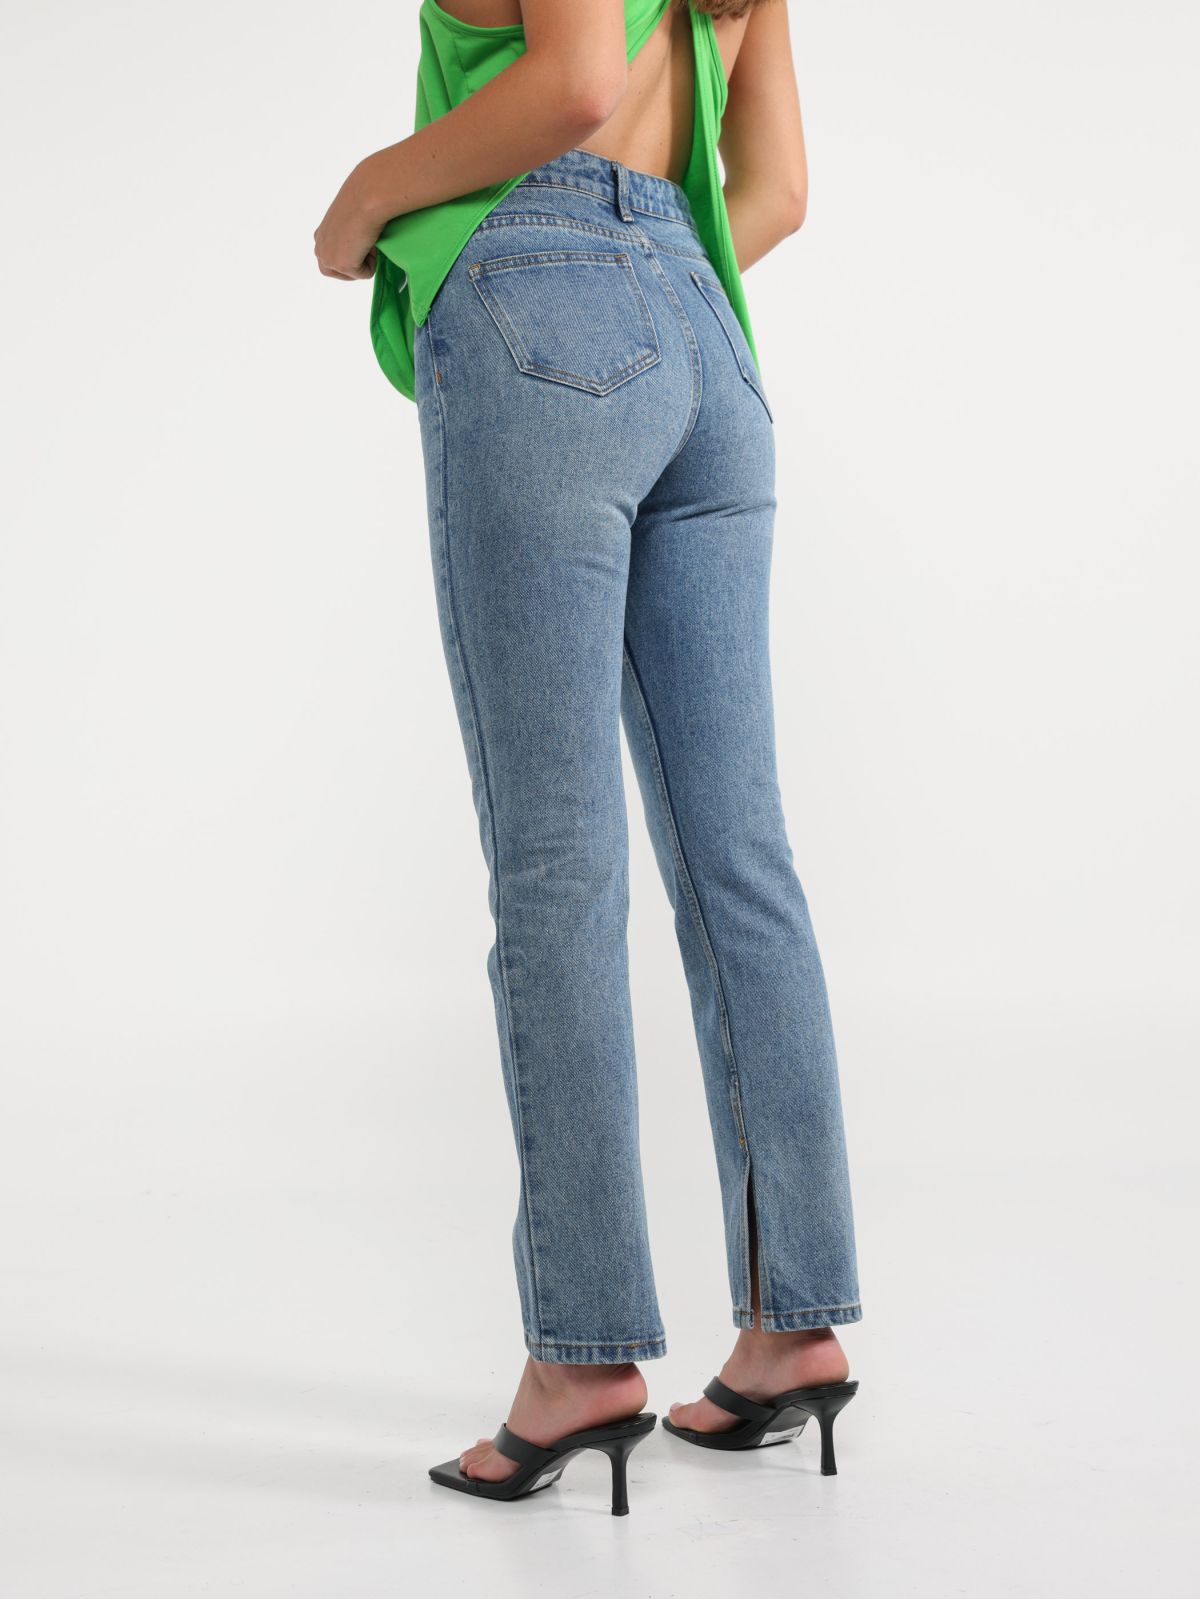  מכנסי ג'ינס ארוכים בגזרה ישרה עם שסעים של TERMINAL X